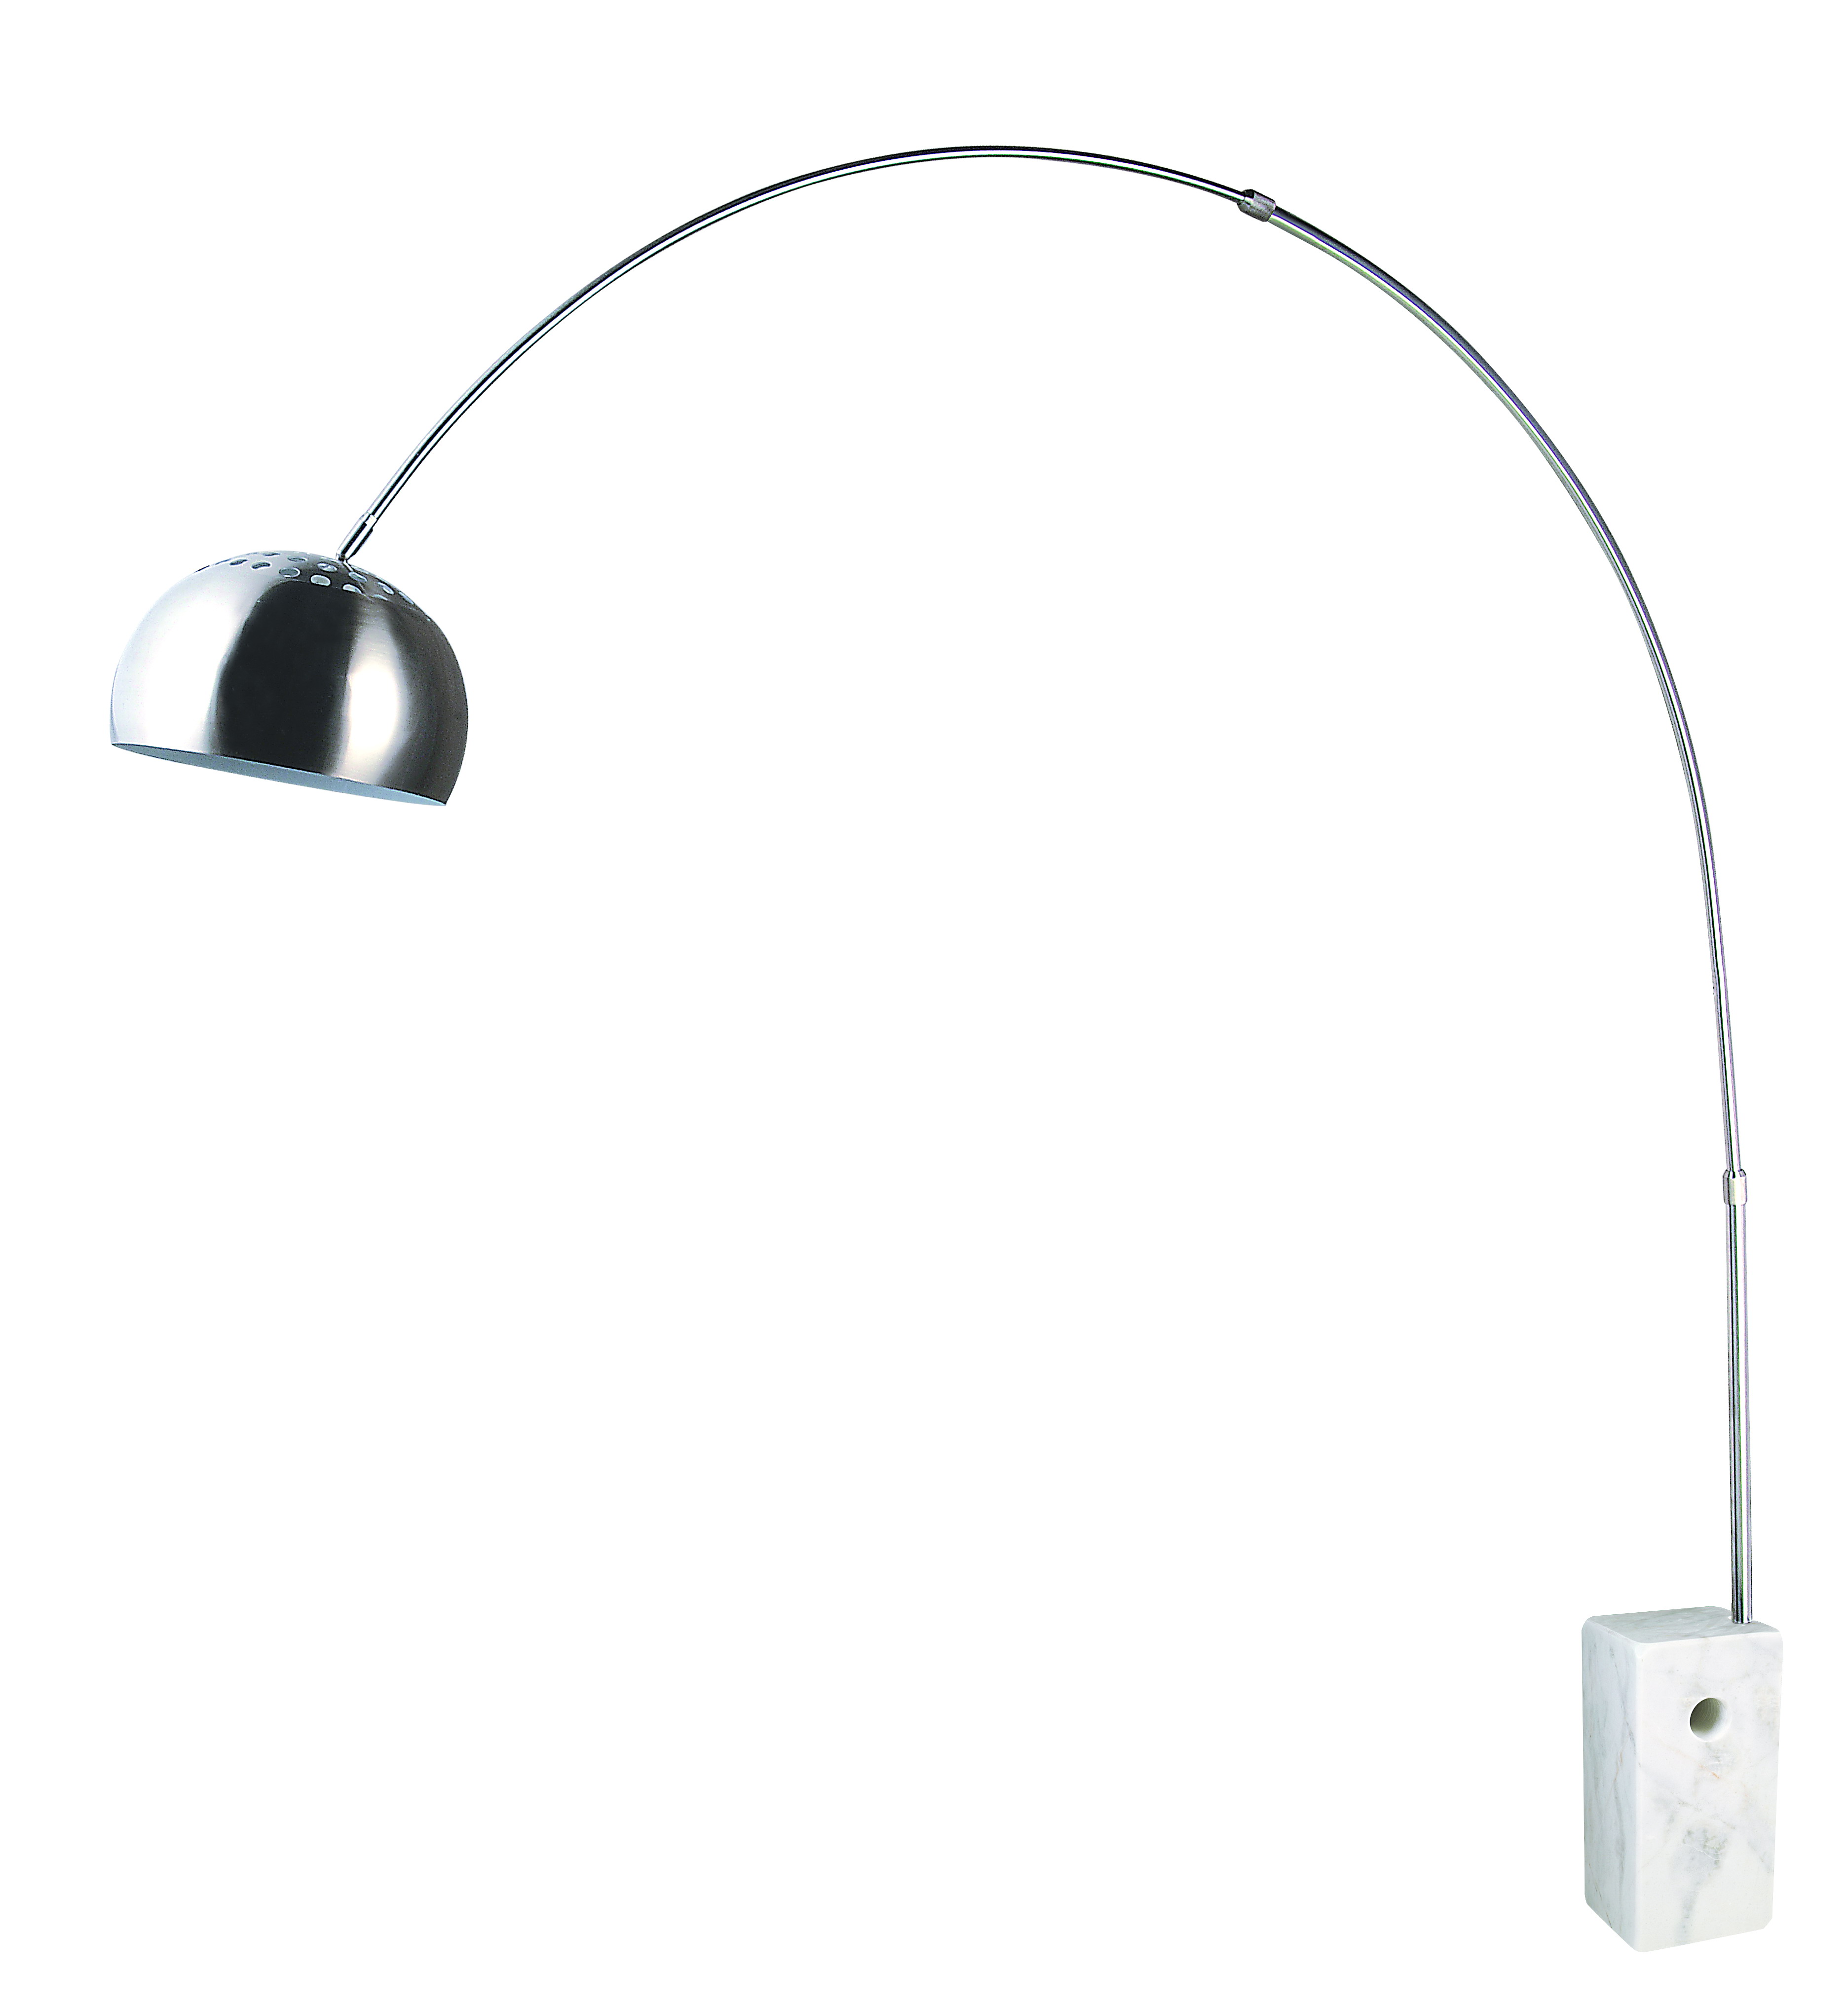 Регулируемый напольный светильник дуги пола дома современного дизайна (375A)